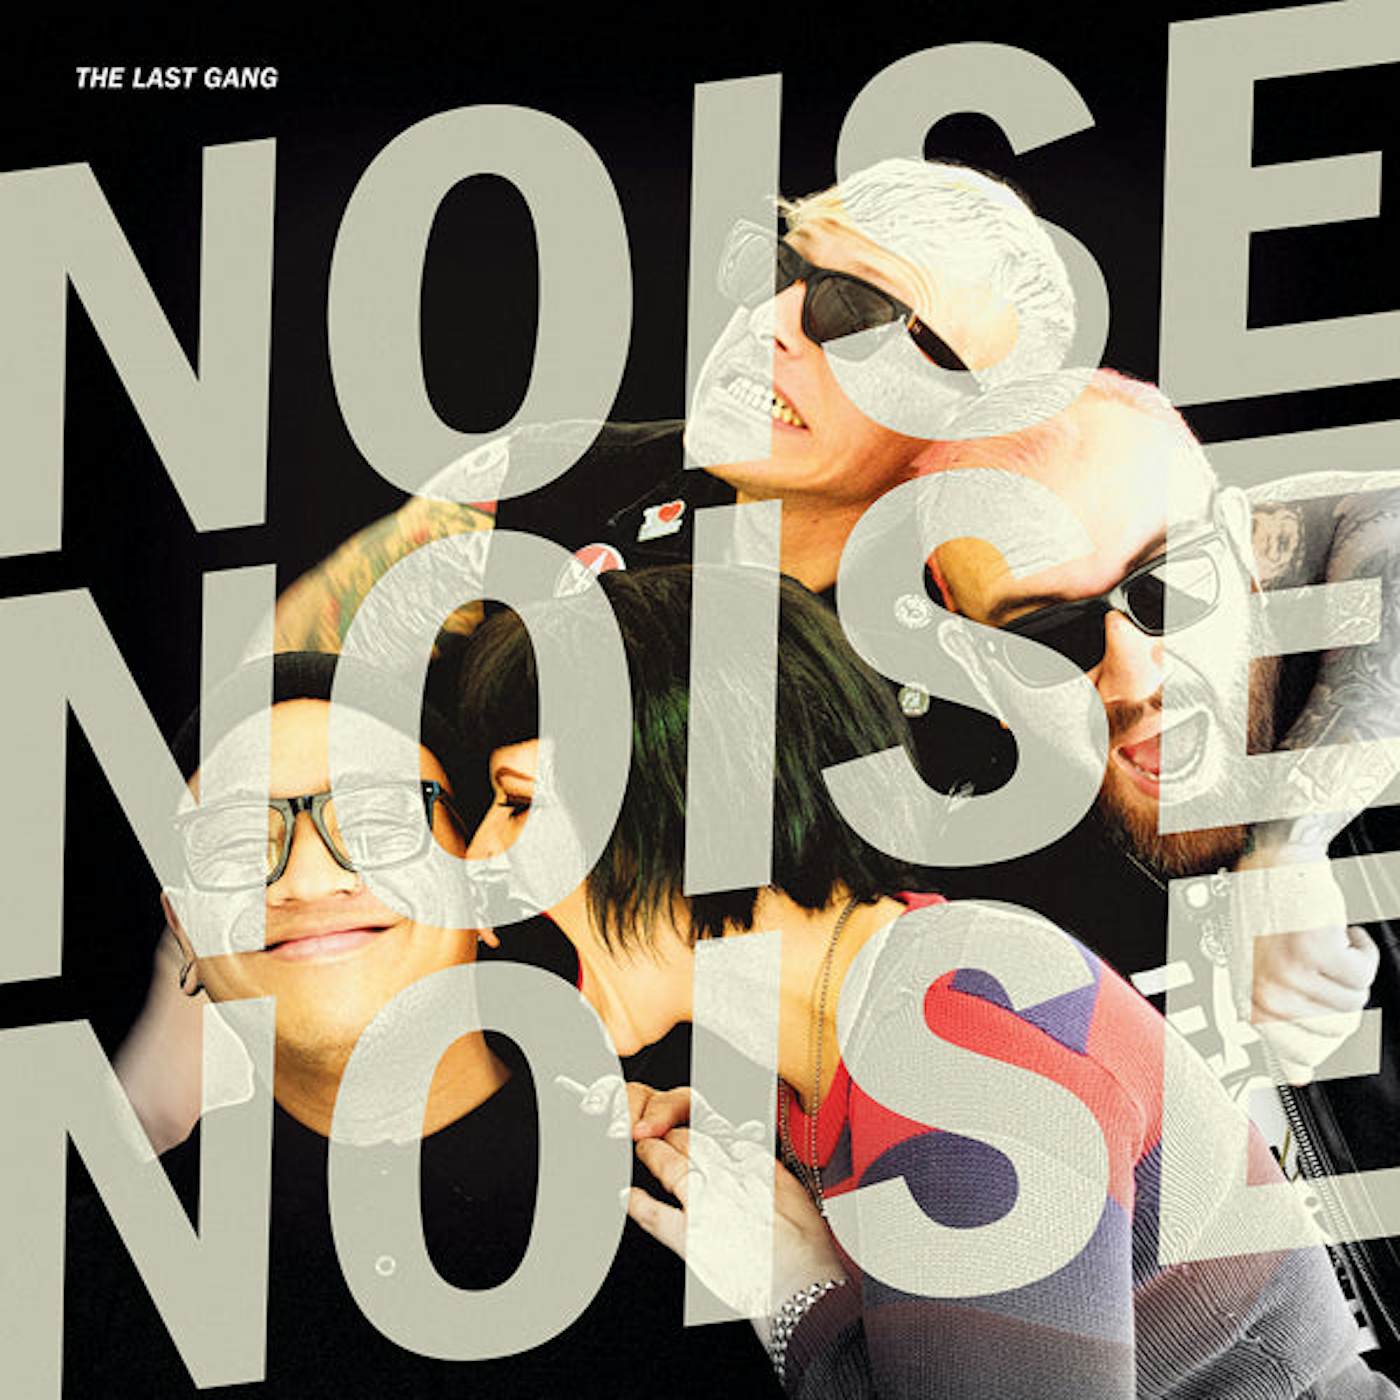 The Last Gang LP - Noise Noise Noise (Vinyl)